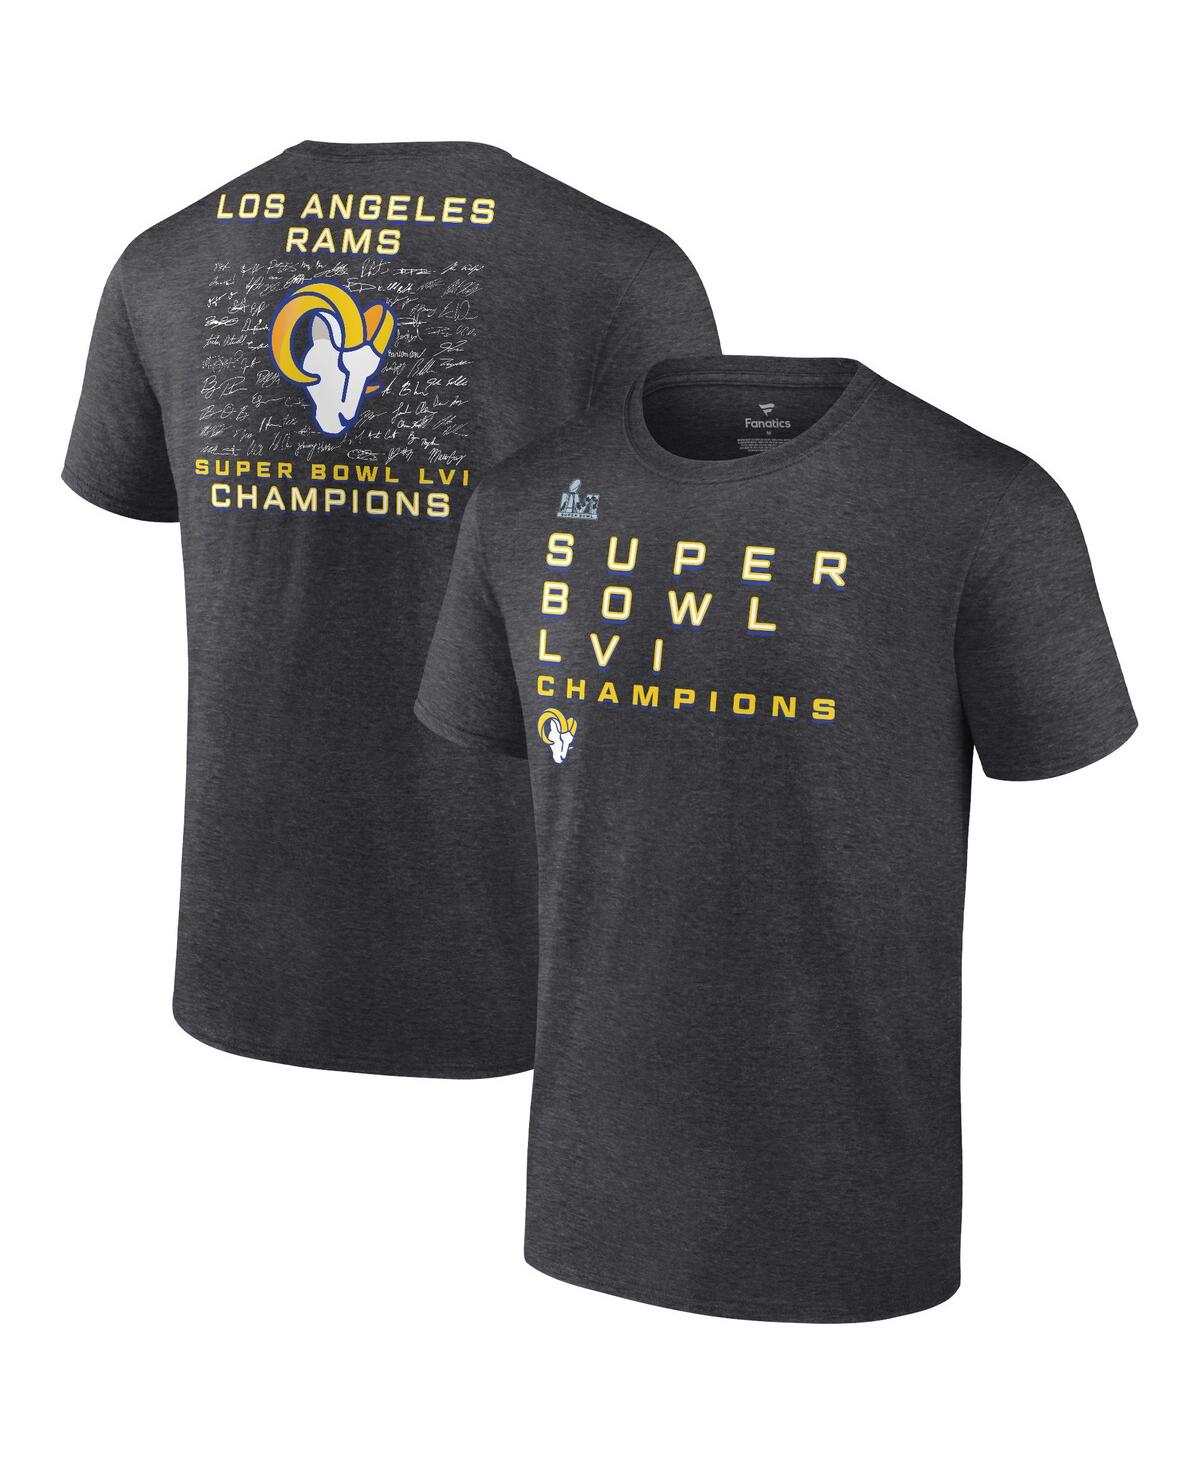 Men's Fanatics Charcoal Los Angeles Rams Super Bowl Lvi Champions Big Tall Signature Route T-shirt - Charcoal